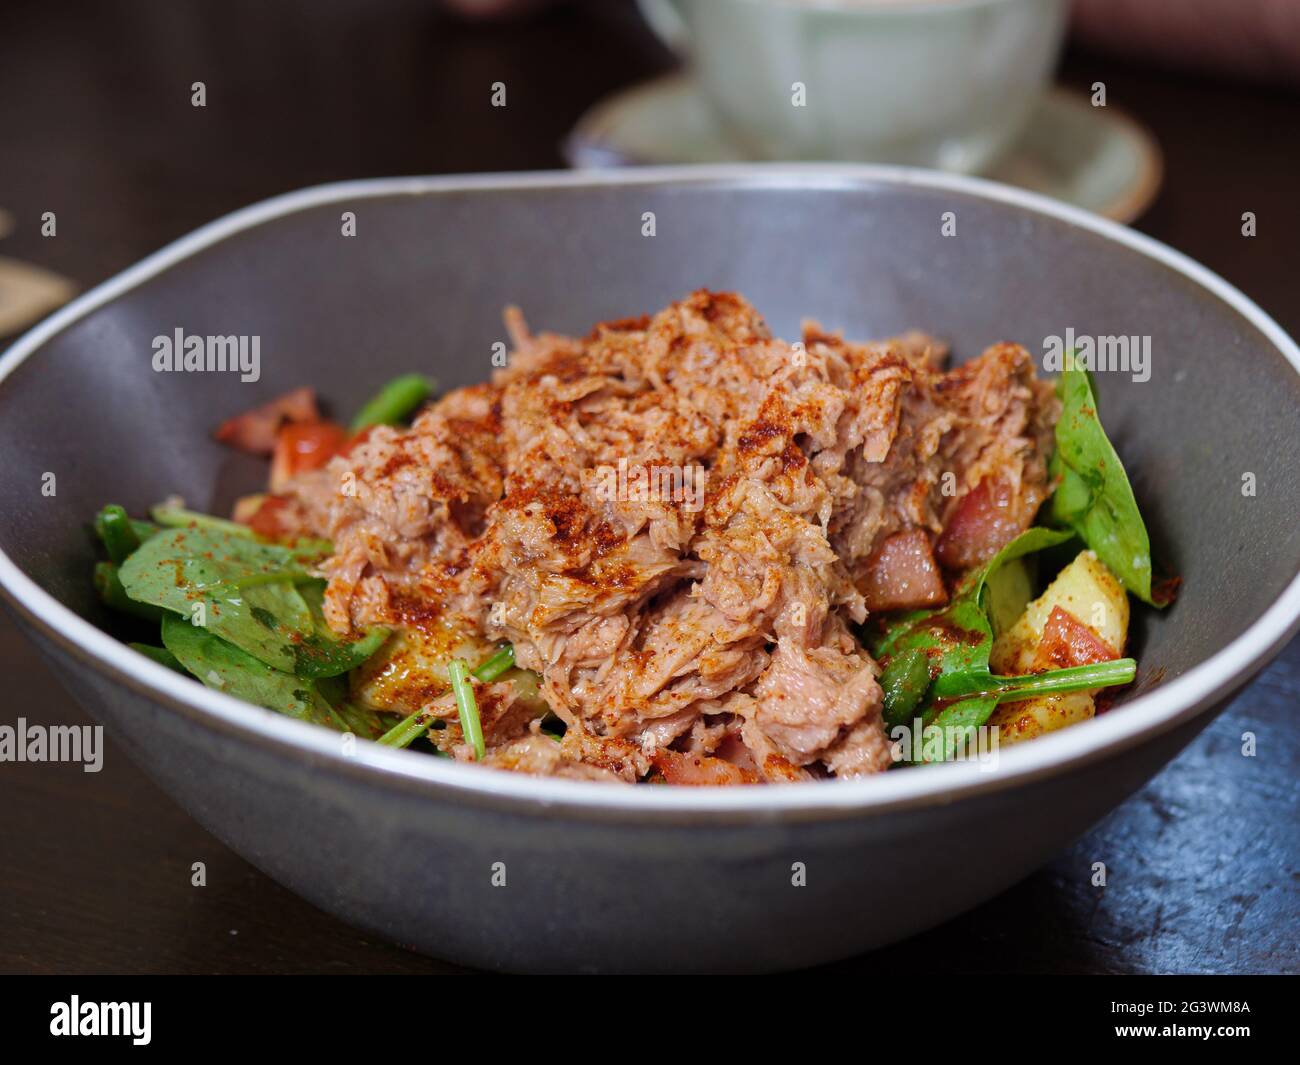 Primo piano foto di un'insalata di tonno con patate, pomodori, spinaci e fagioli verdi cosparsi di paprika affumicata Foto Stock